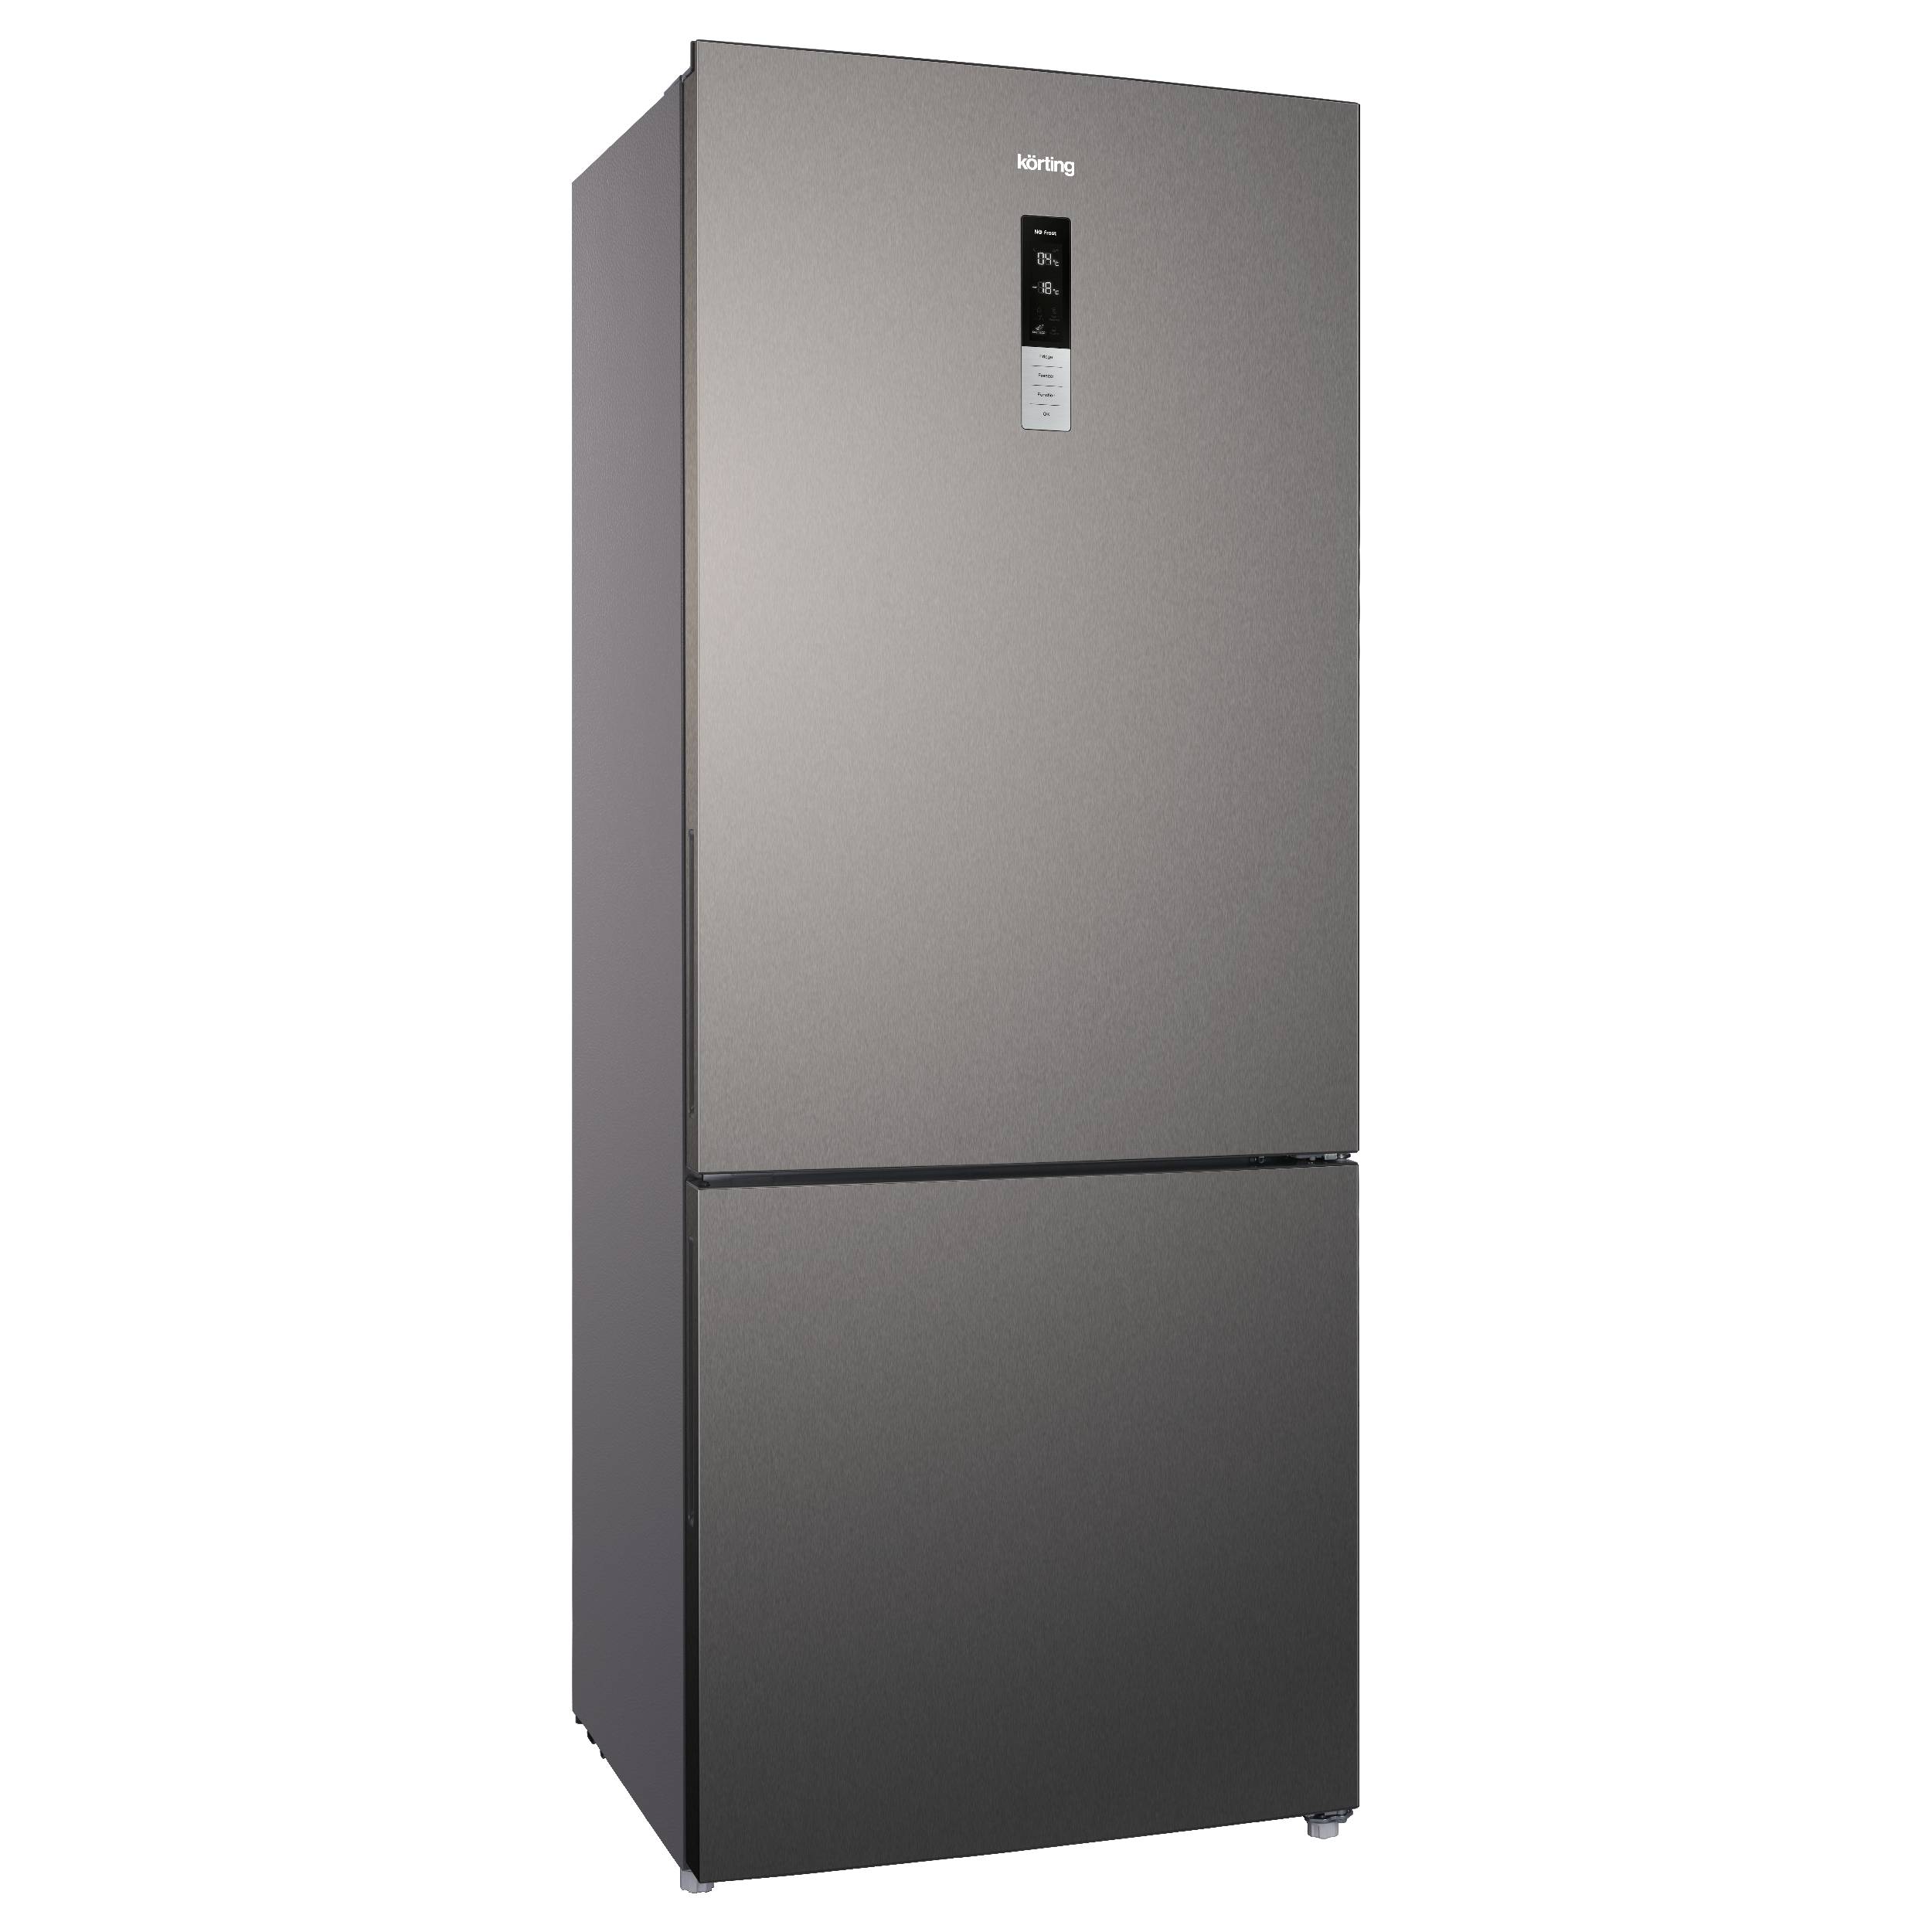 Холодильник Korting KNFC 72337 X серебристый, серый цифровой продукт dr web